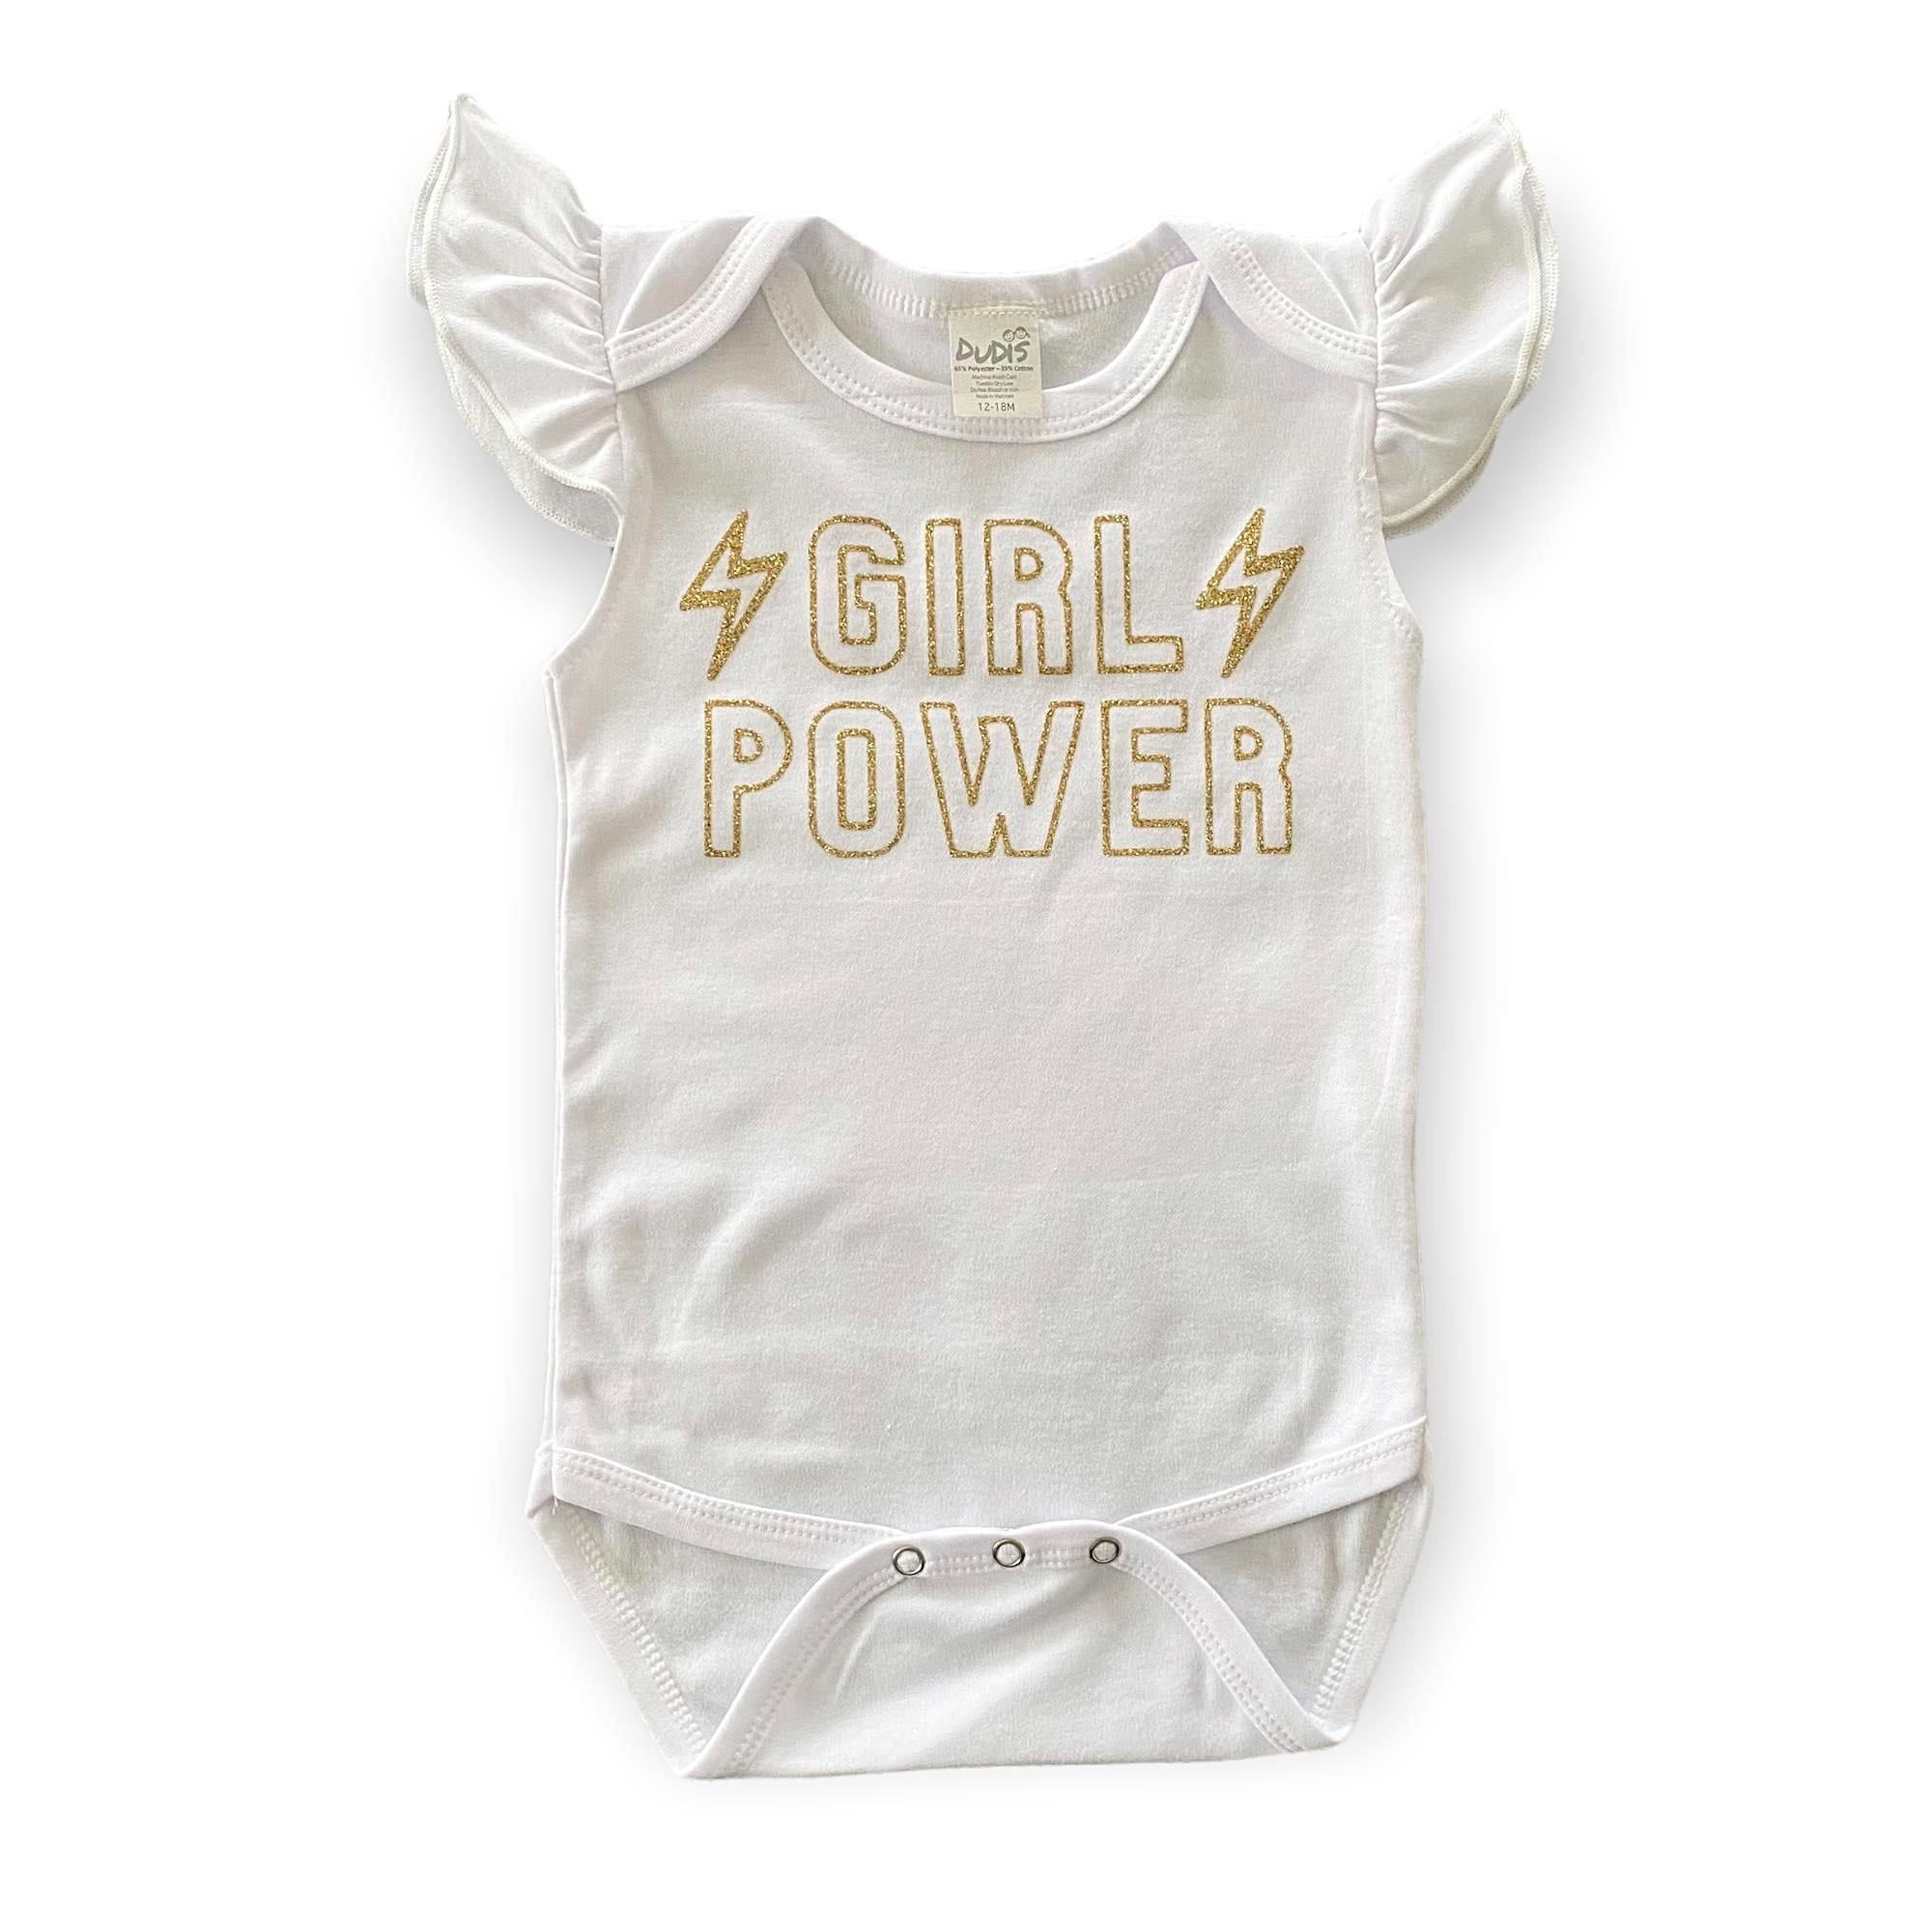 Girl Power Bodysuit with Girl Power in Gold Glitter